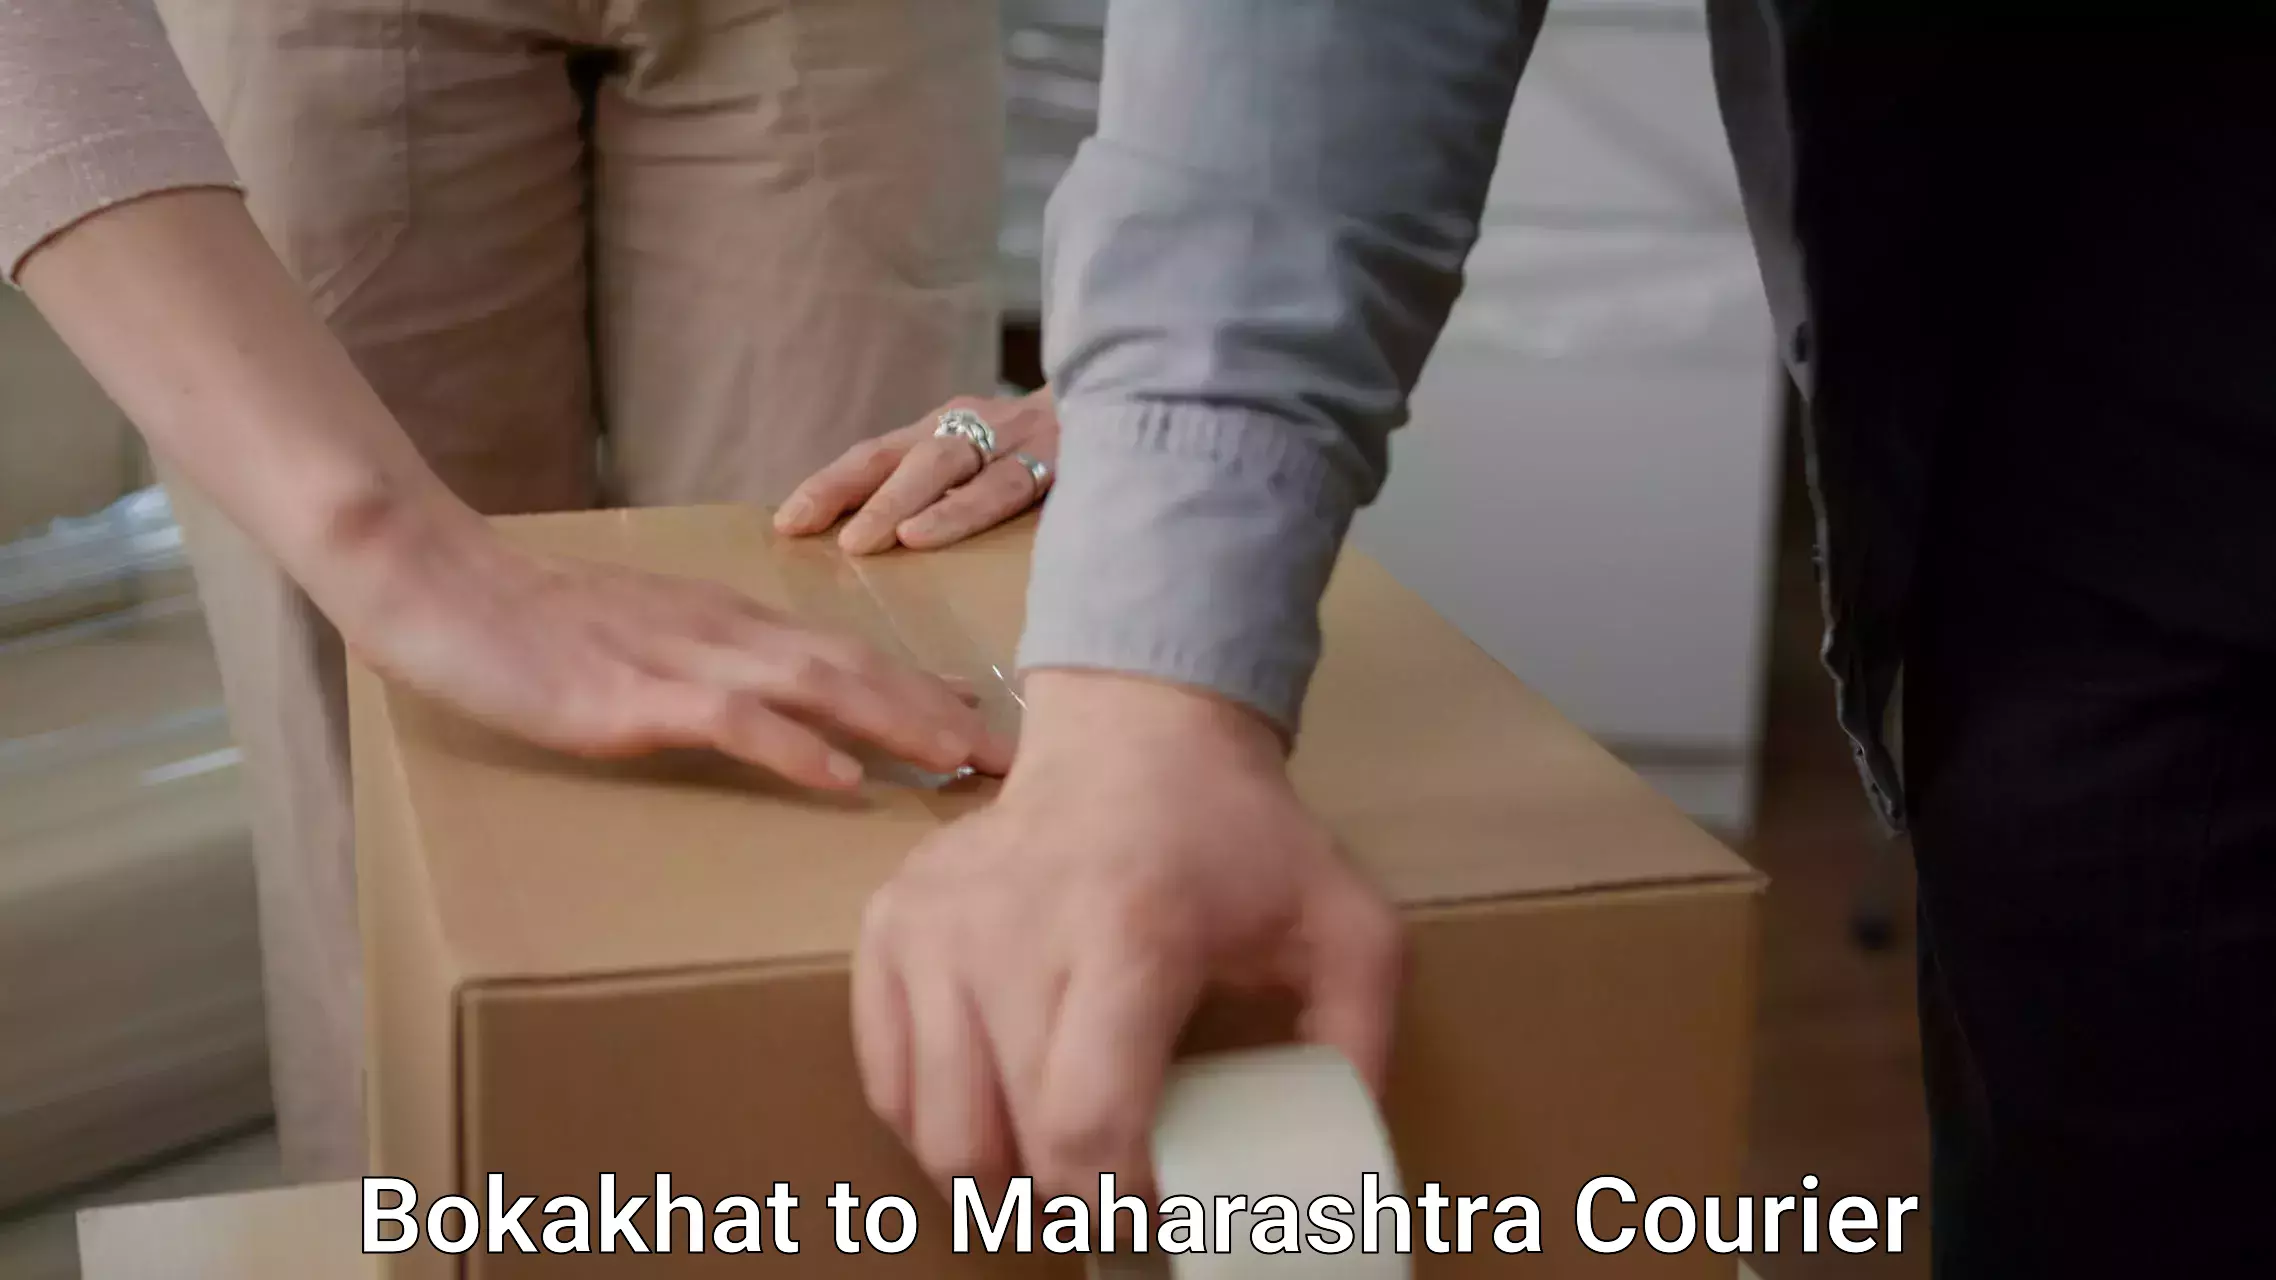 Professional moving company Bokakhat to Maharashtra